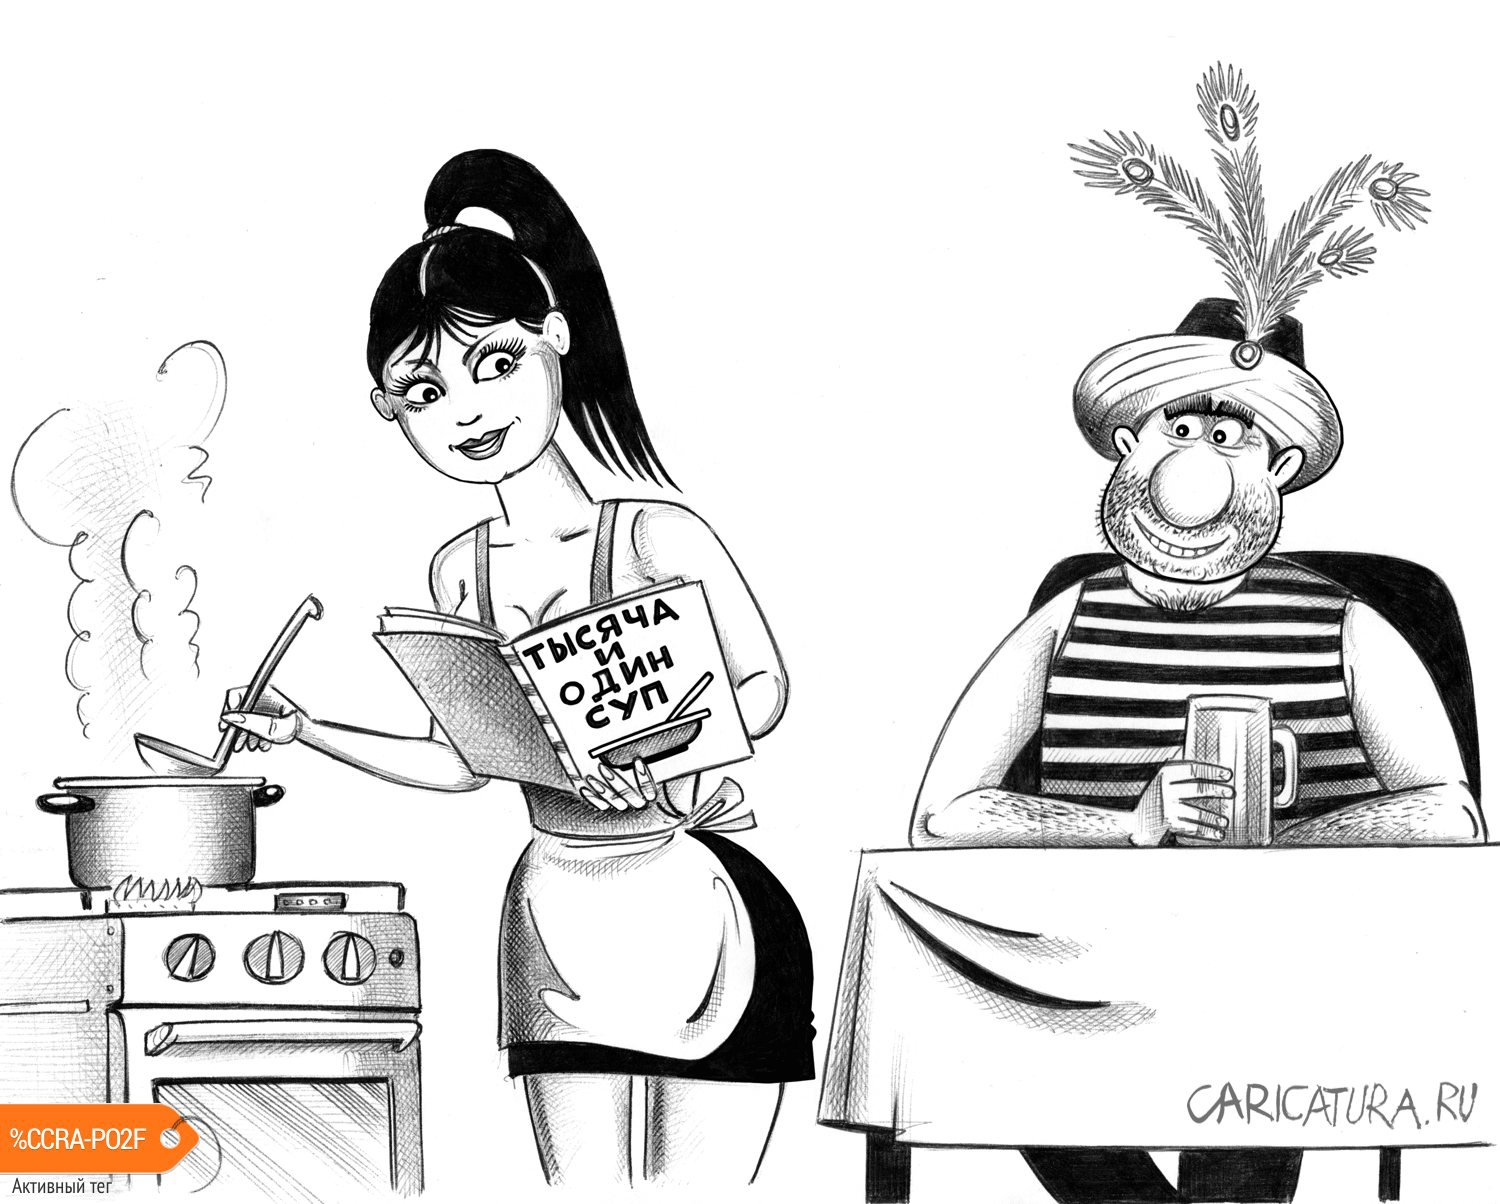 Карикатура "Тысяча и один суп", Сергей Корсун